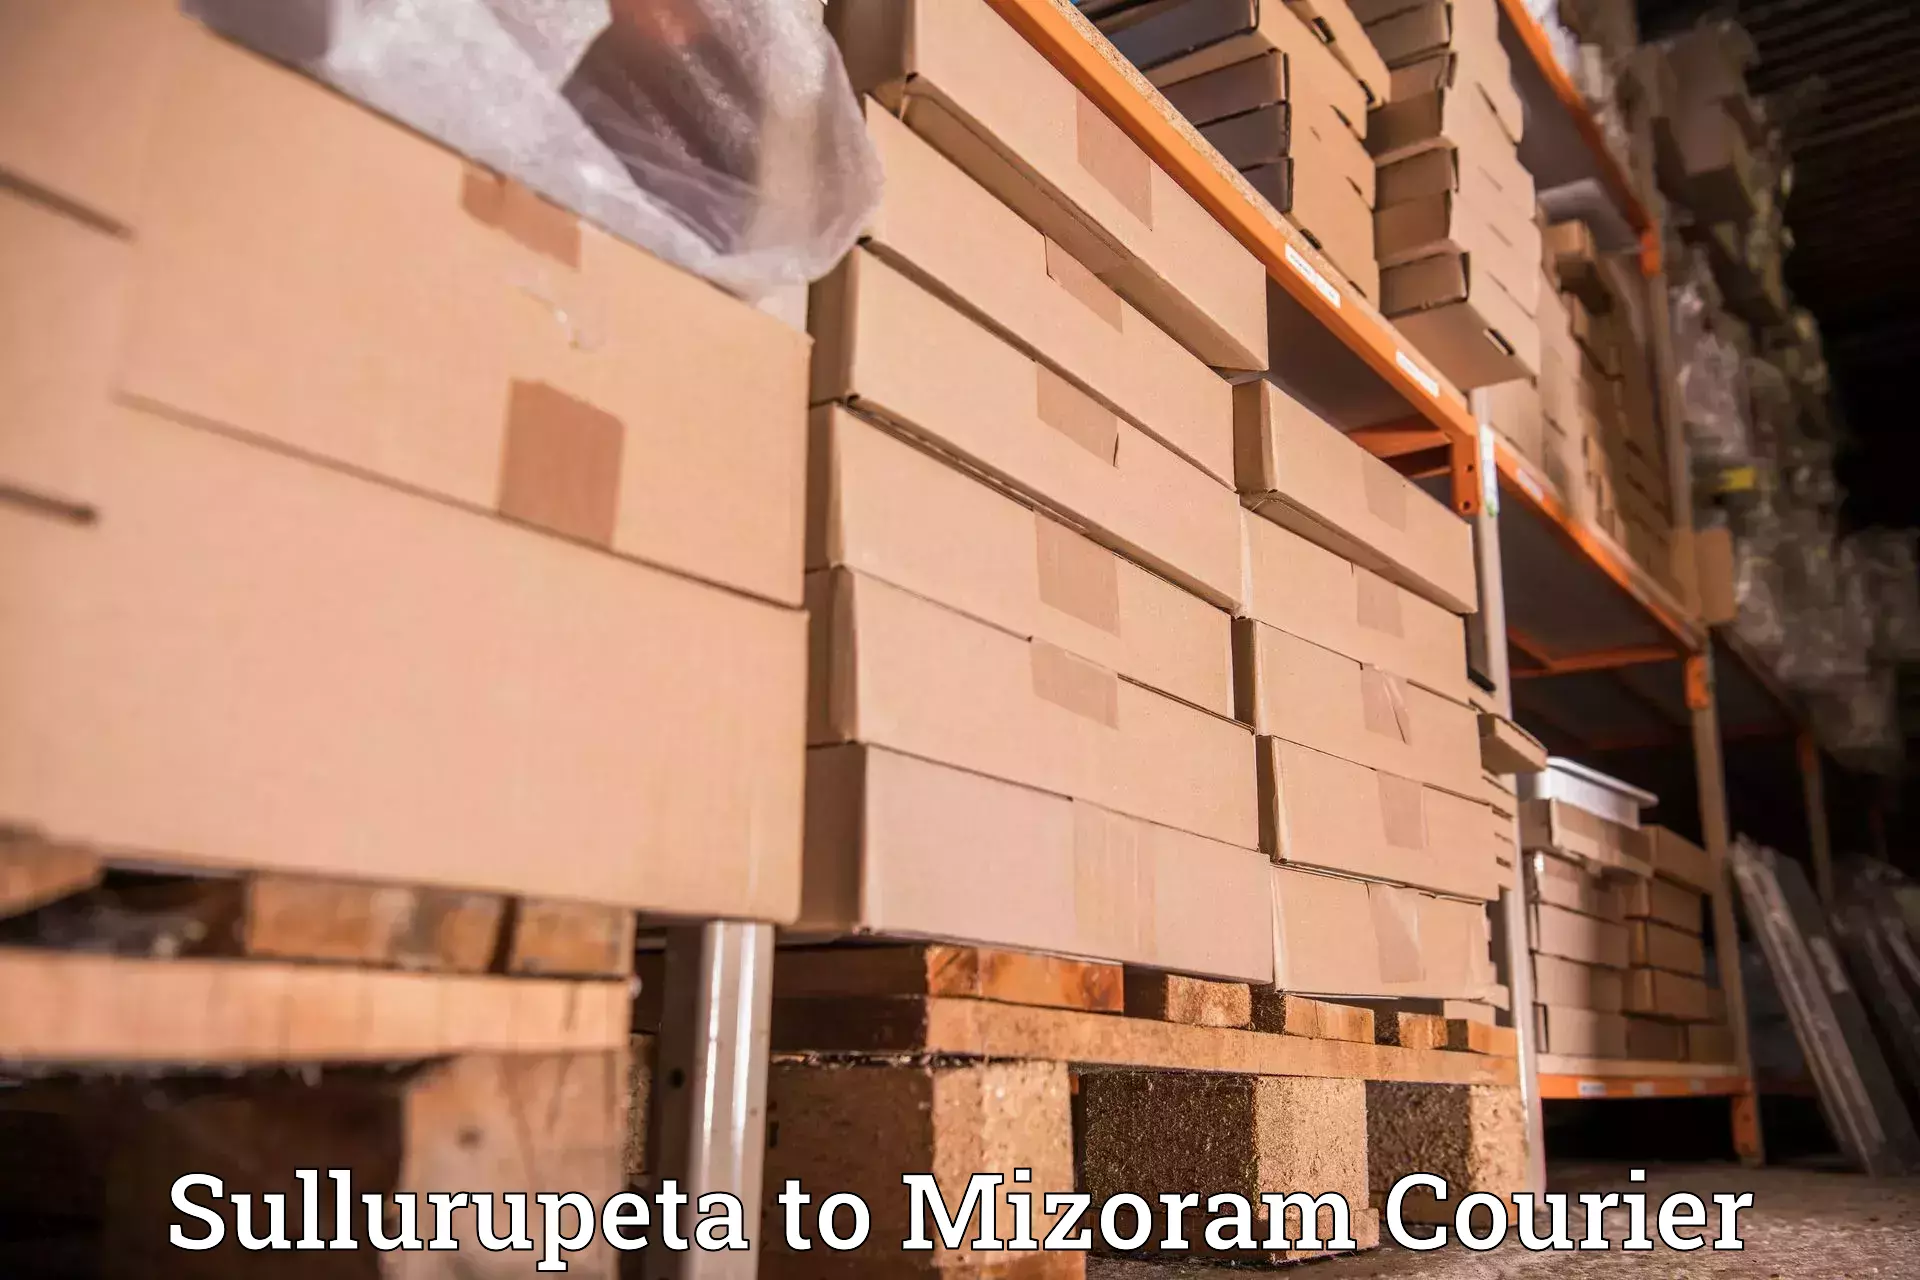 Reliable courier service in Sullurupeta to Mizoram